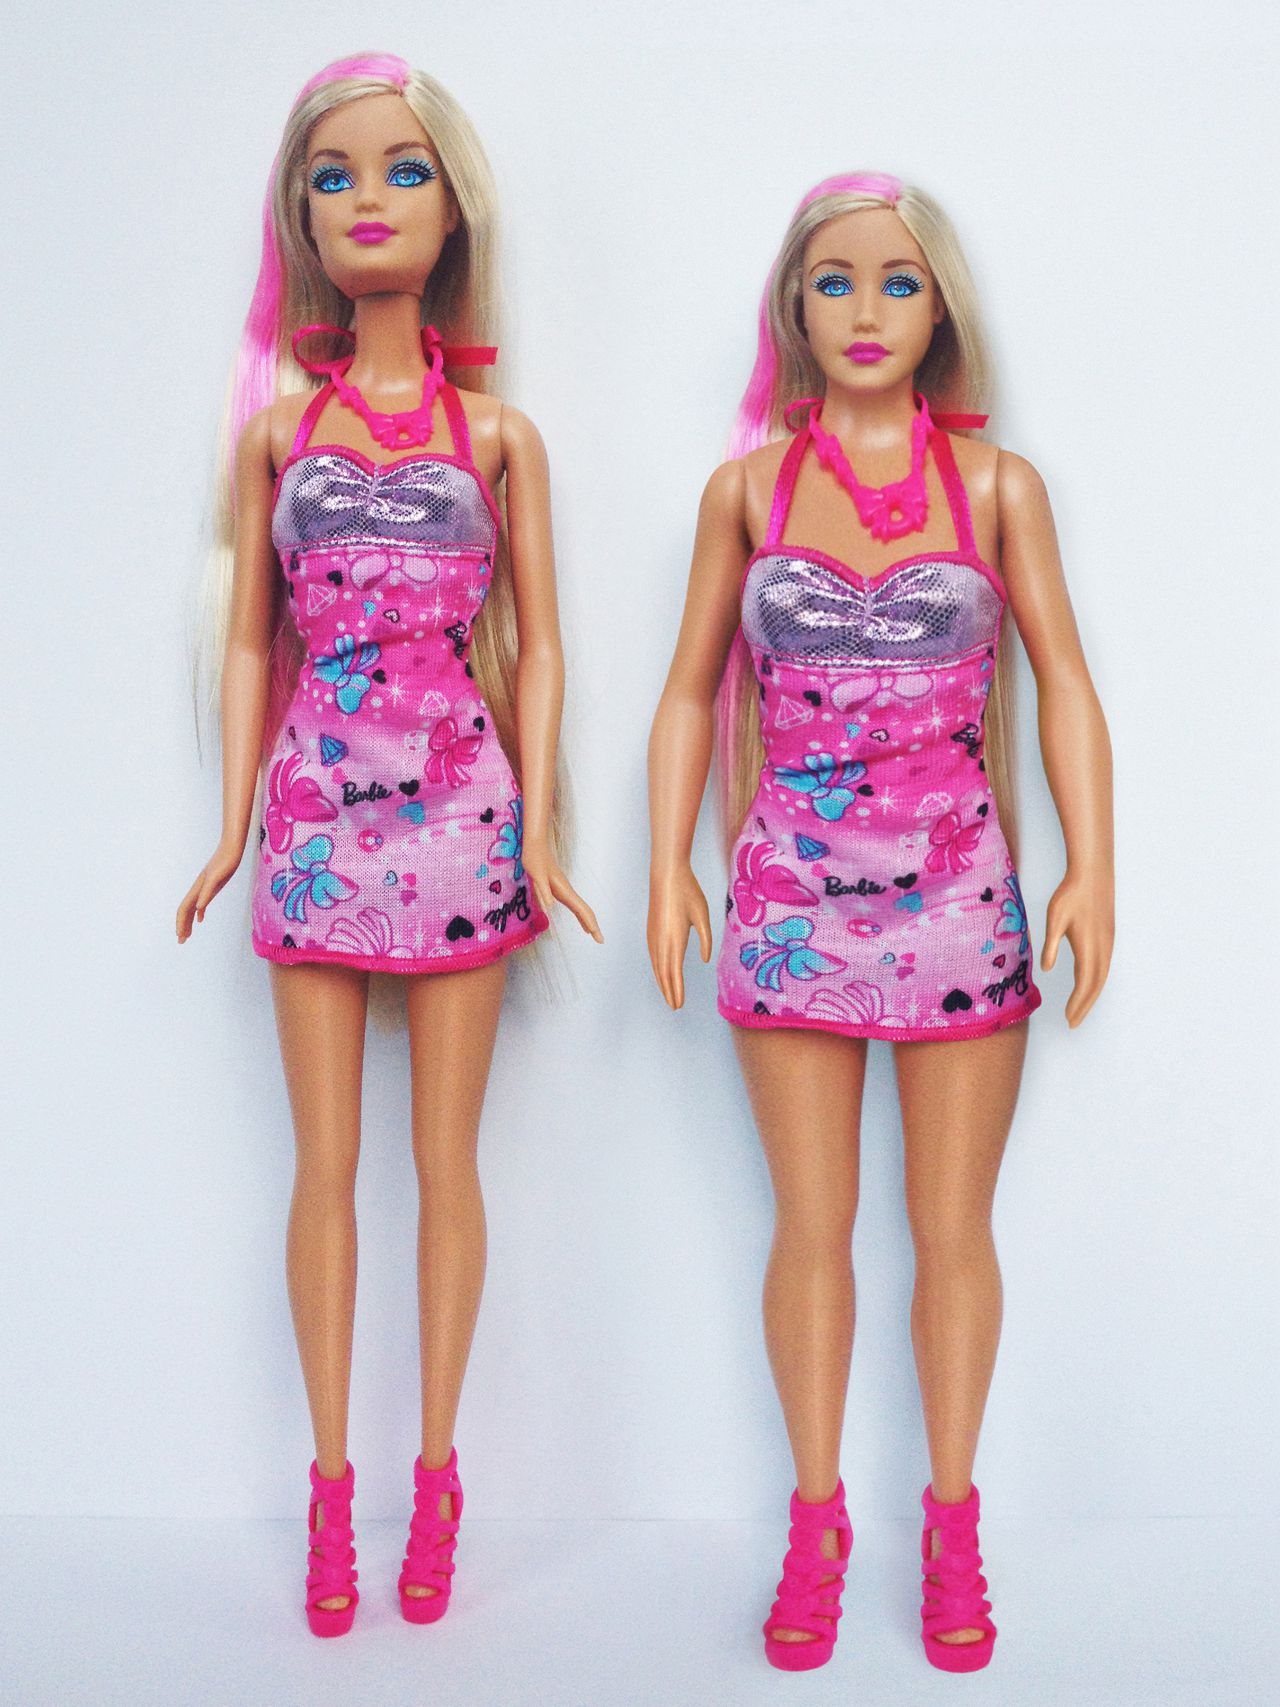 Manie Publicatie In het algemeen Barbie met echte vrouwenmaten - NRC